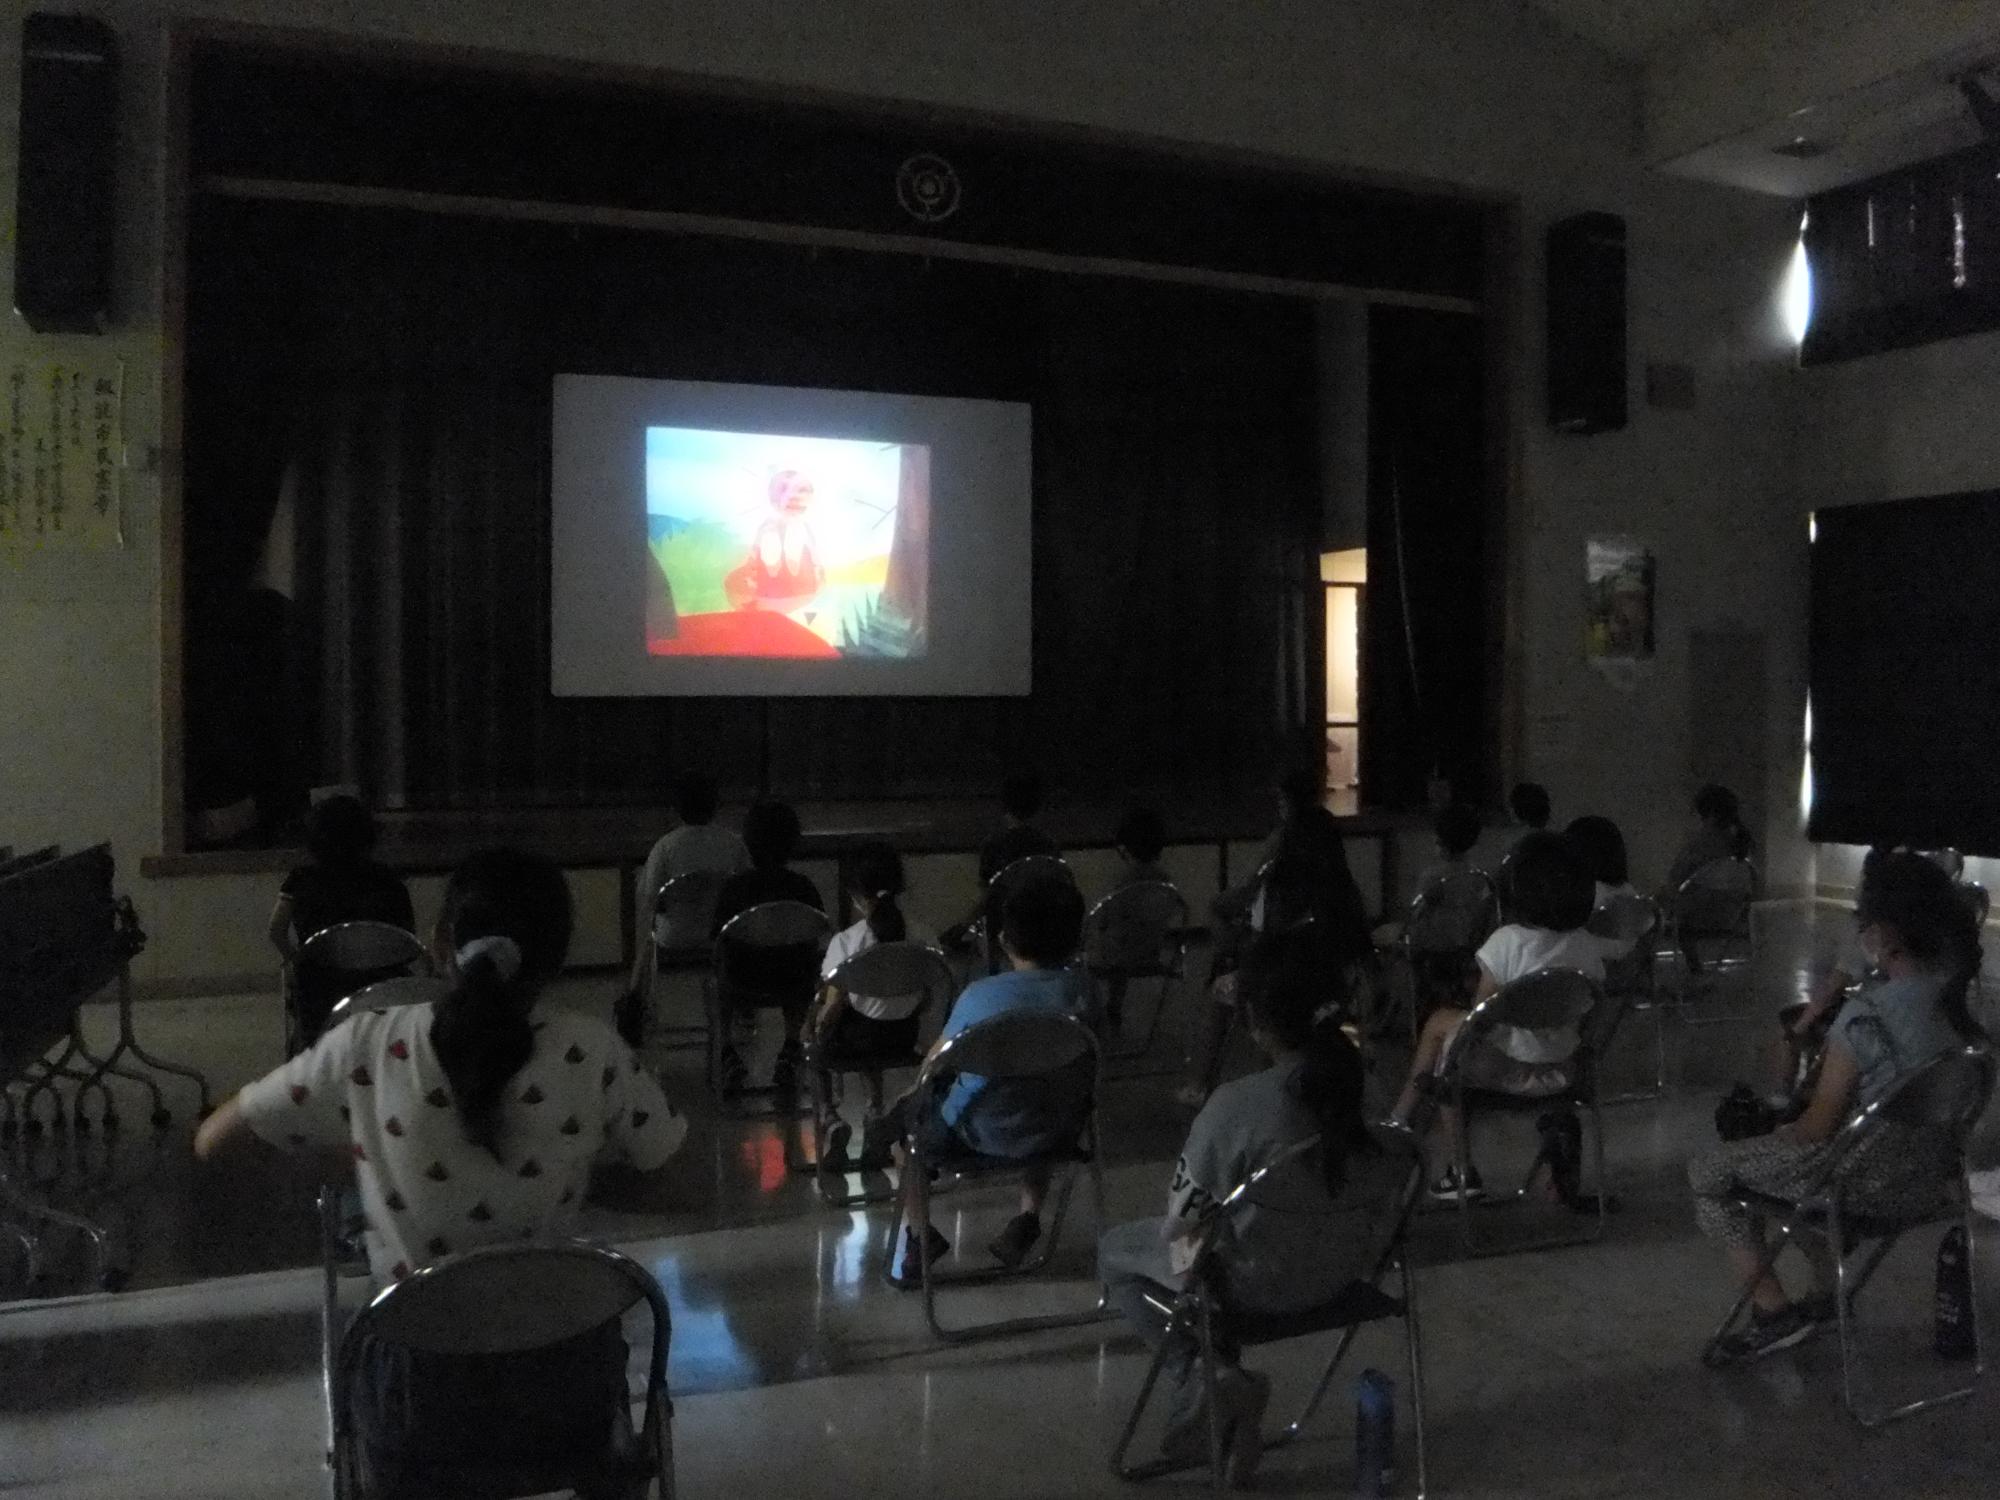 夏休み子ども映画会の参加者たちが、暗い室内で映画を観ている様子の写真